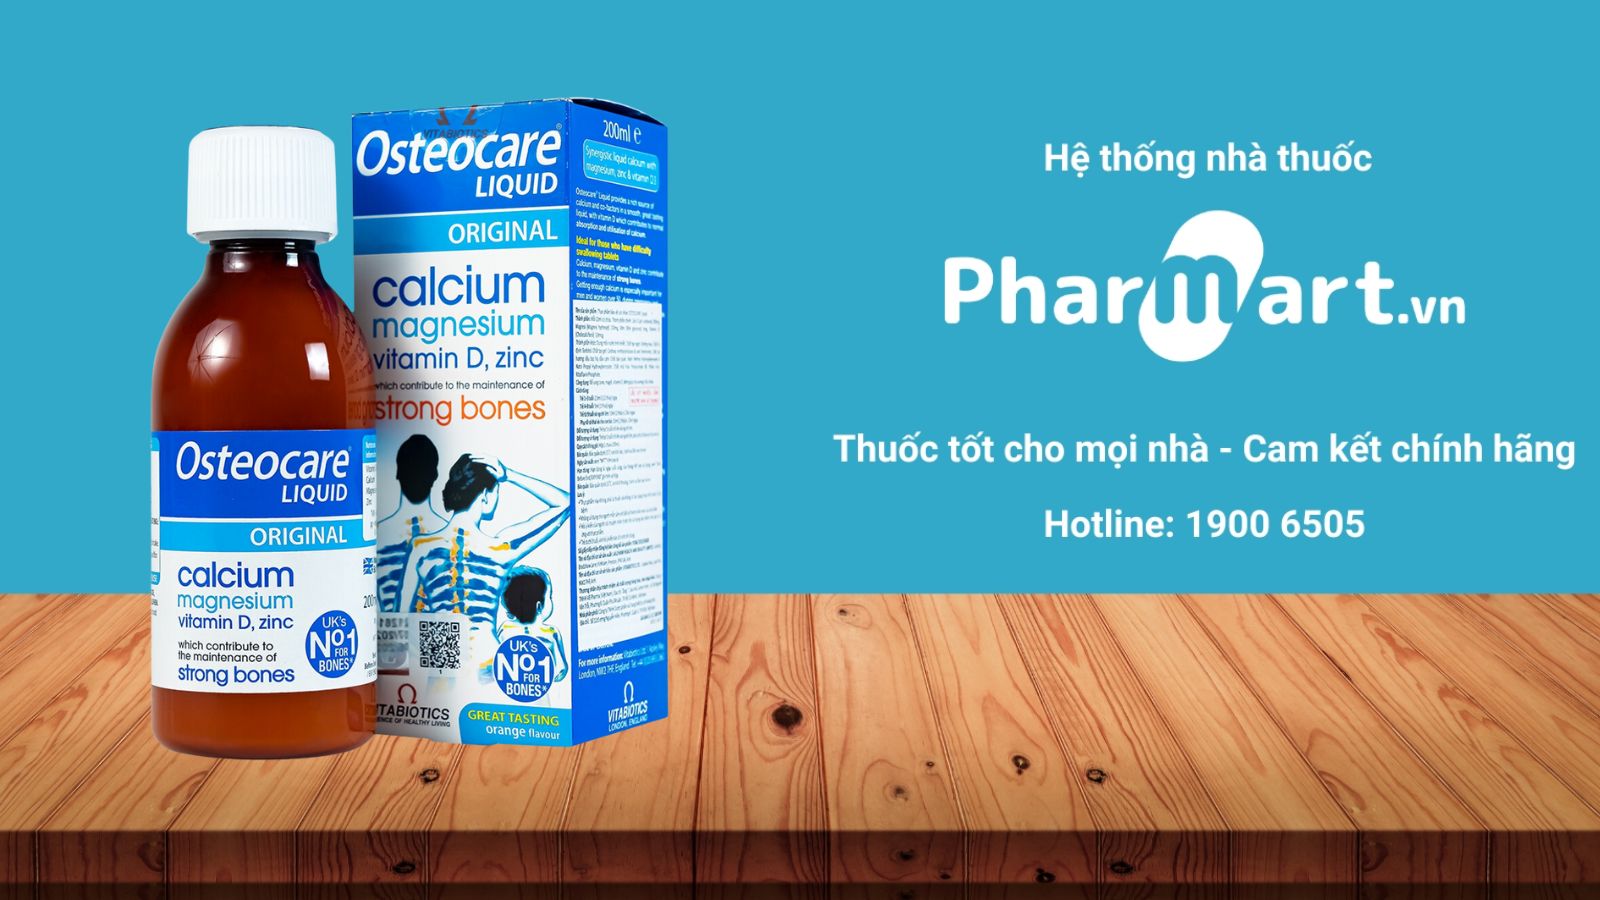 Mua ngay Osteocare Liquid chính hãng tại Pharmart.vn